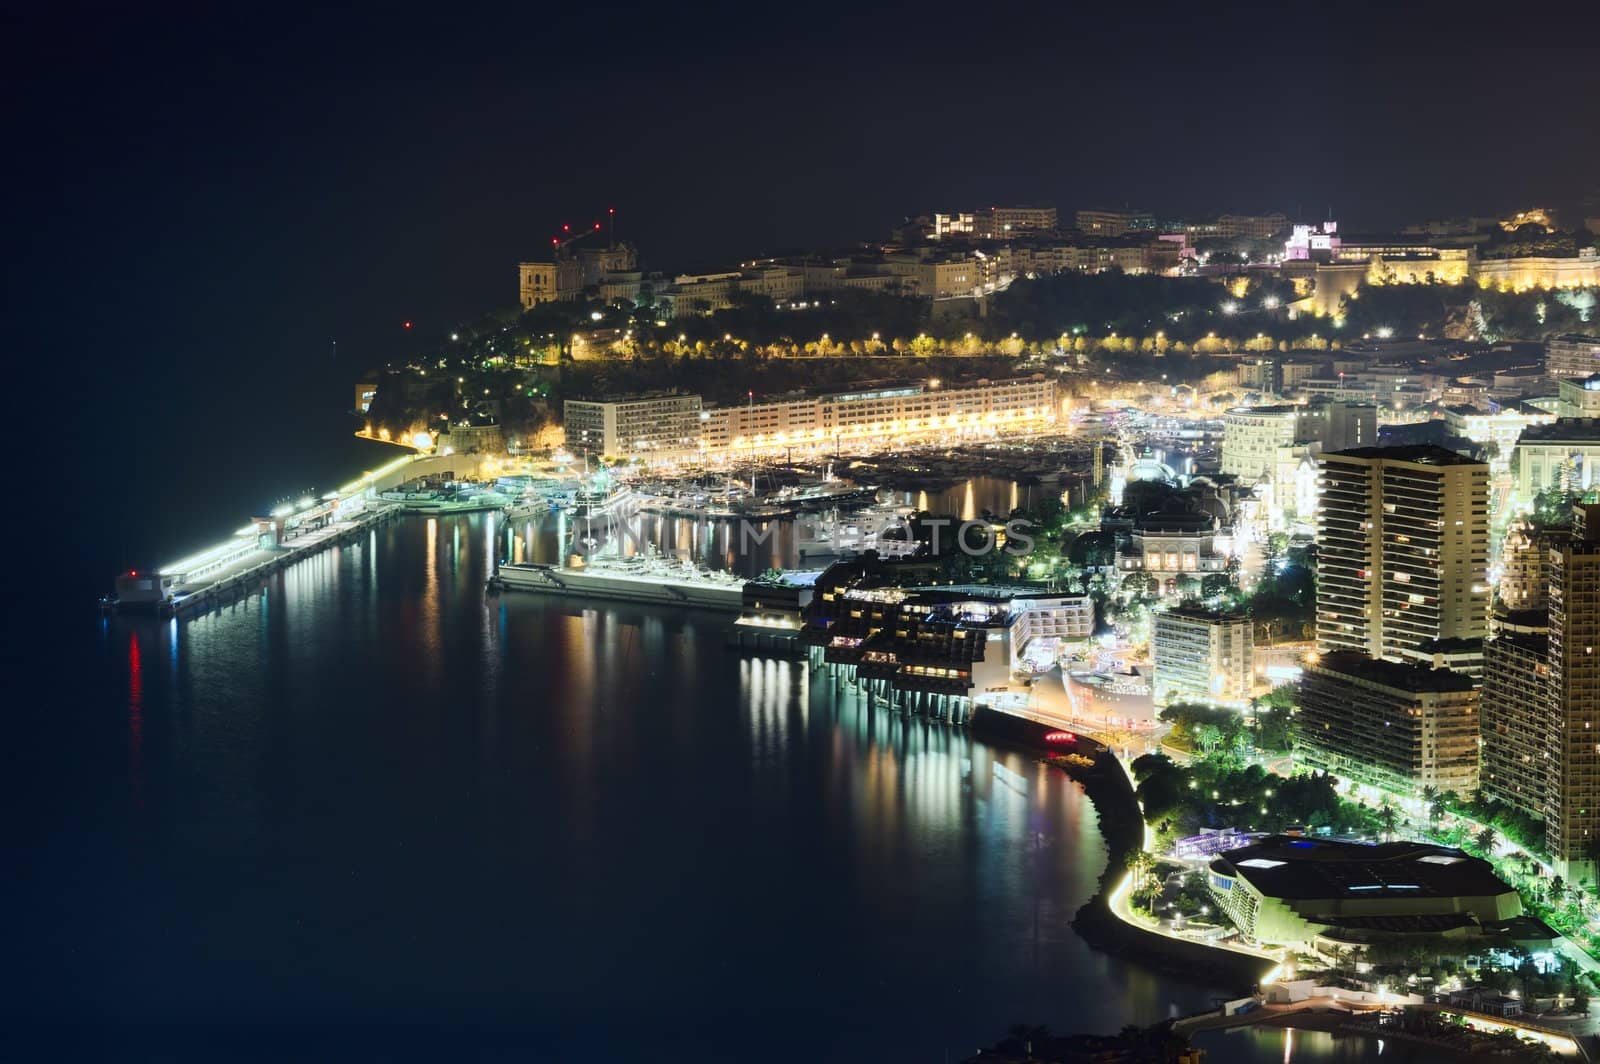 Monaco at night by johny007pan